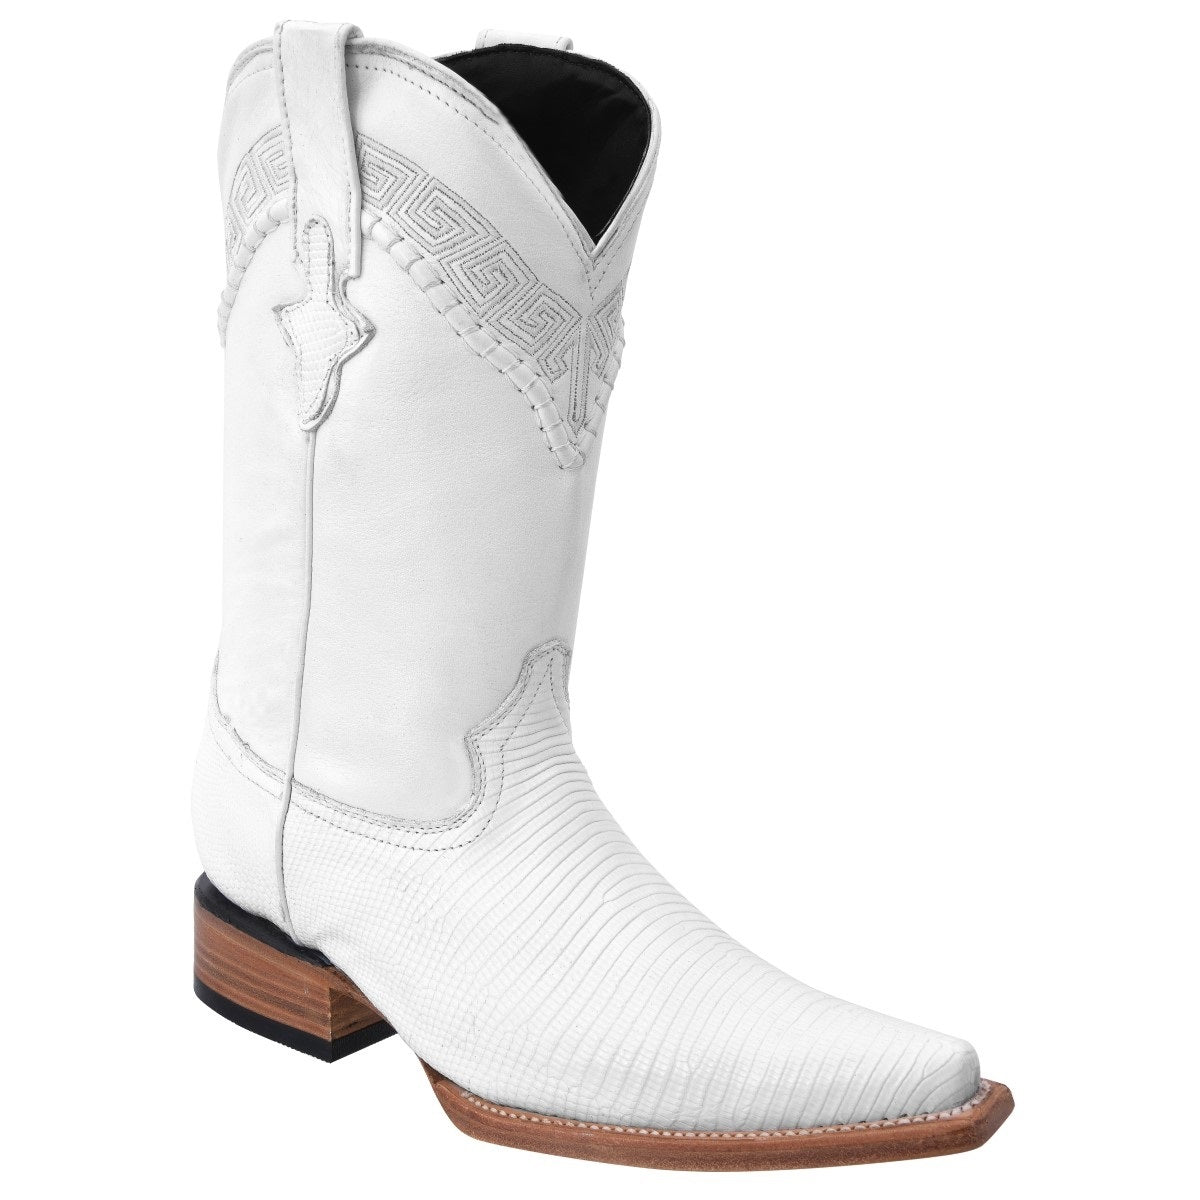 Botas Vaqueras TM-WD0069 - Western Boots